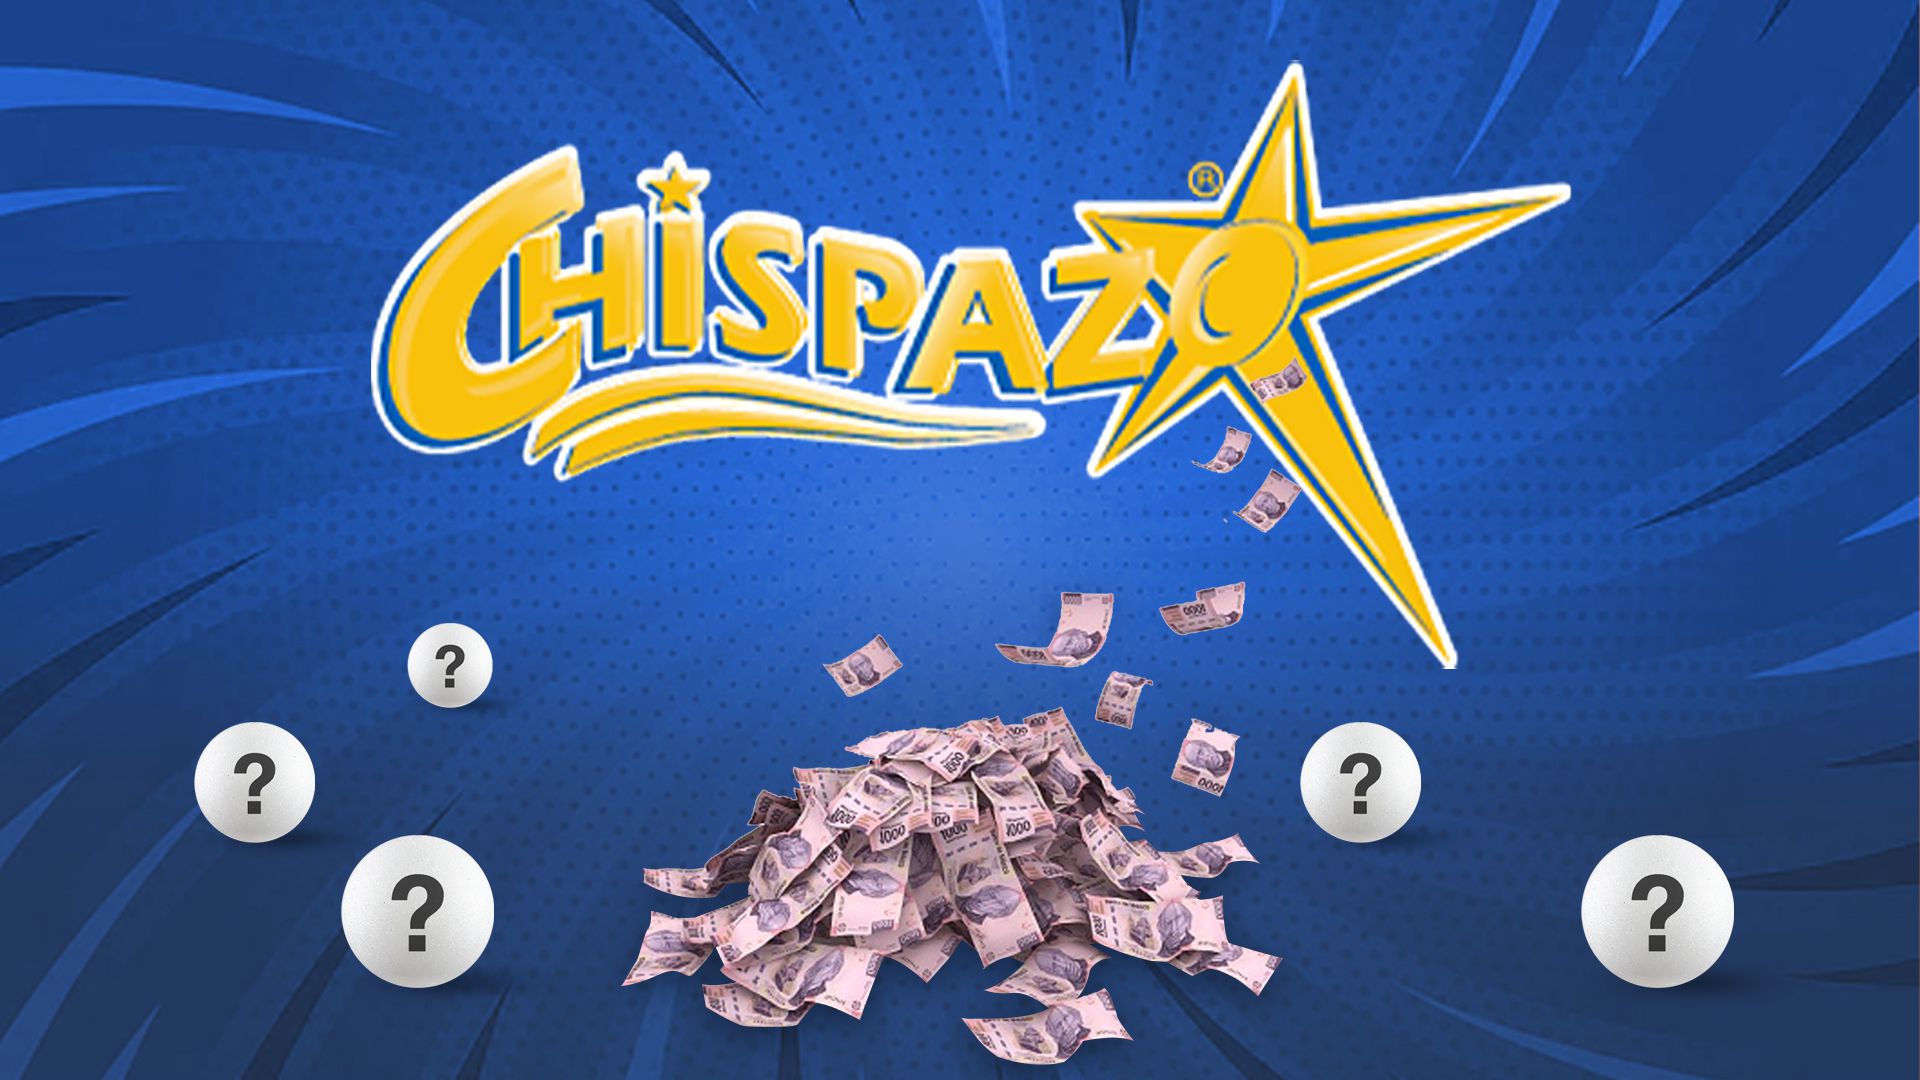 En el sorteo de hoy, Chipazo entregó $1,207,782.00 pesos (Infobae/Jovani Pérez)